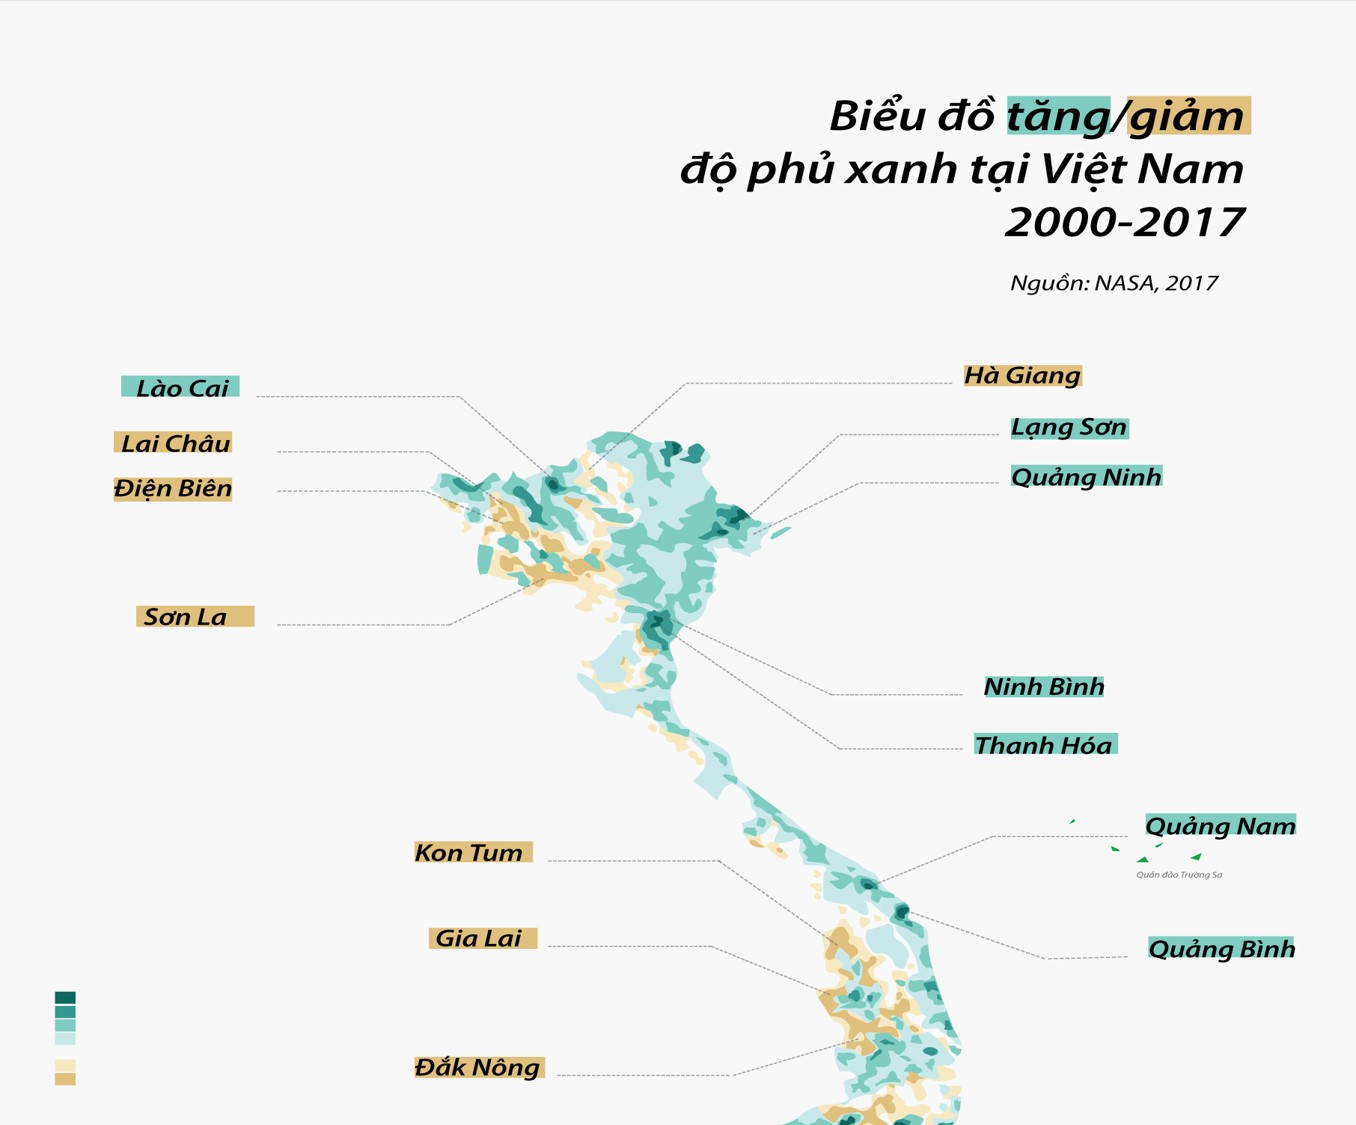 Biểu đồ đo sự biến đổi cây xanh trên bề mặt của Việt Nam từ năm 2000 tới năm 2017